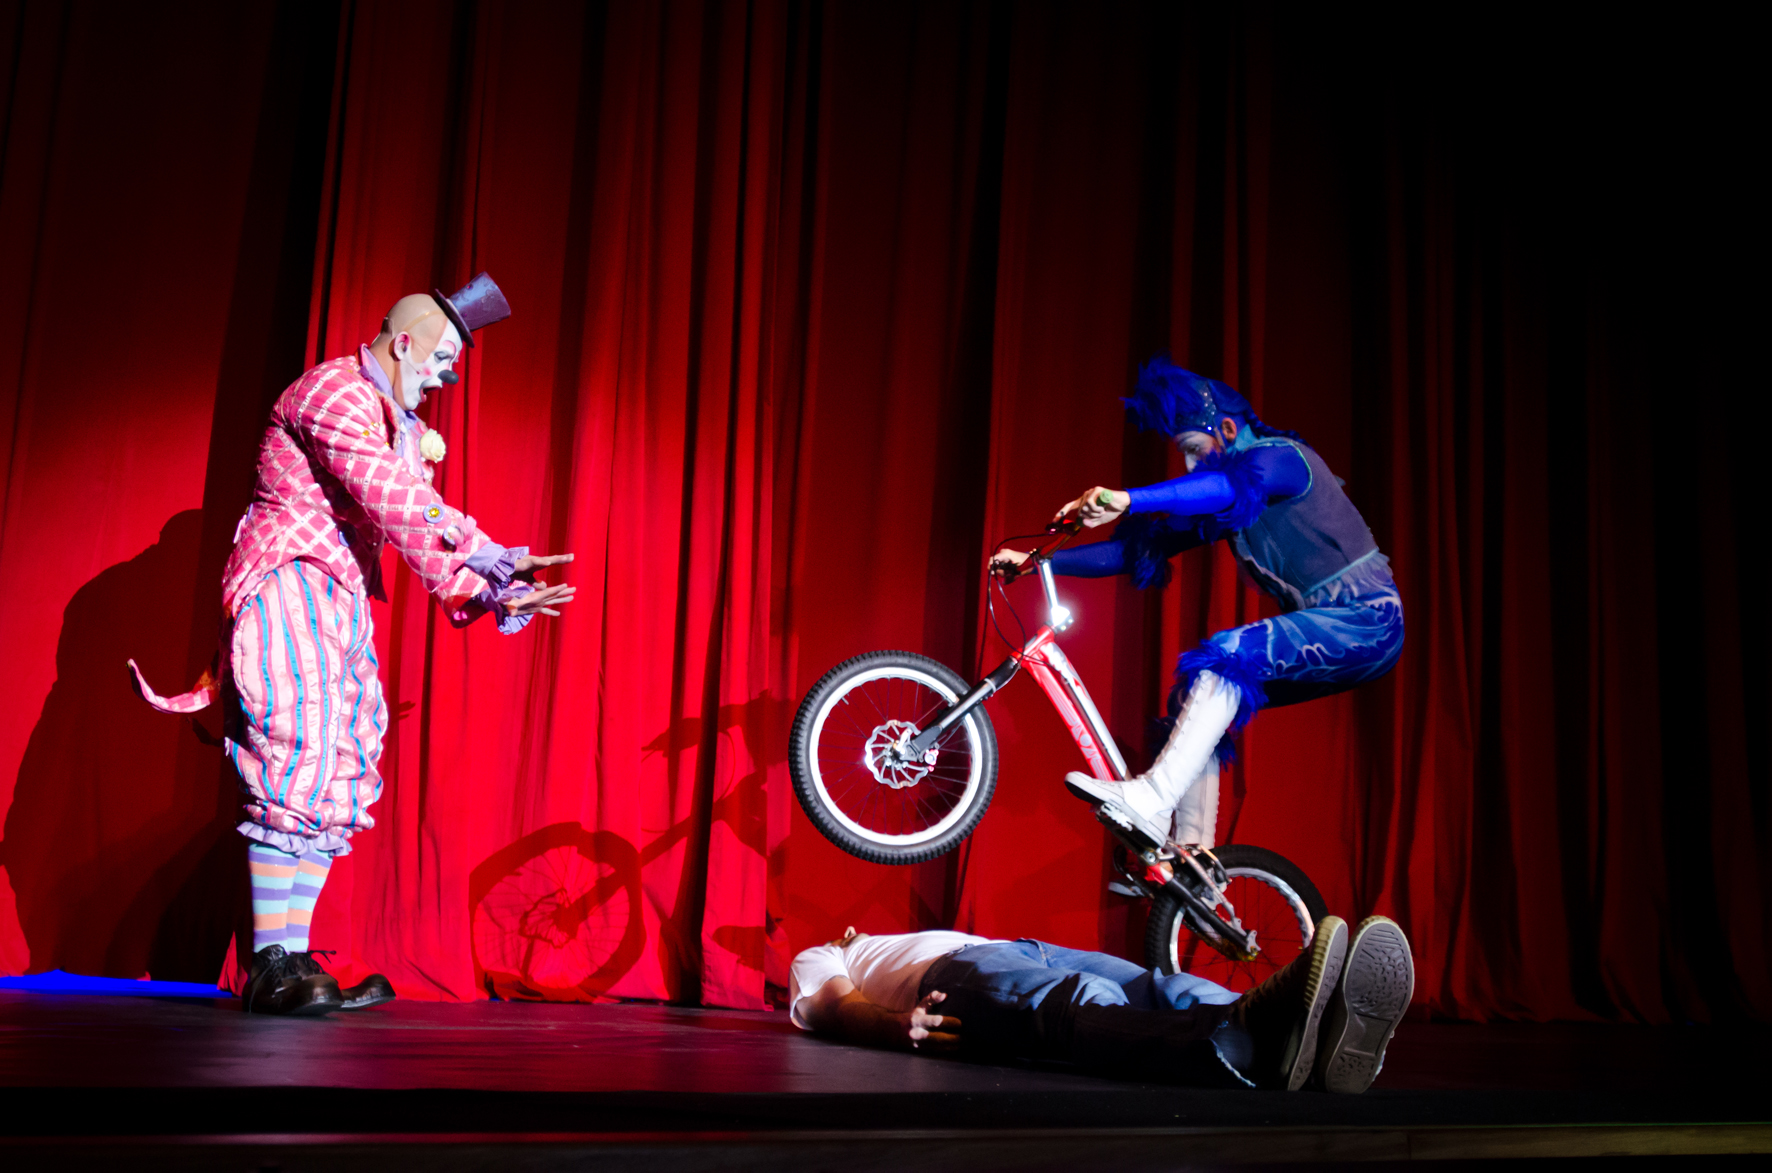 O espetáculo apresenta números de equilíbrio e malabares (Foto: Jean Francua)